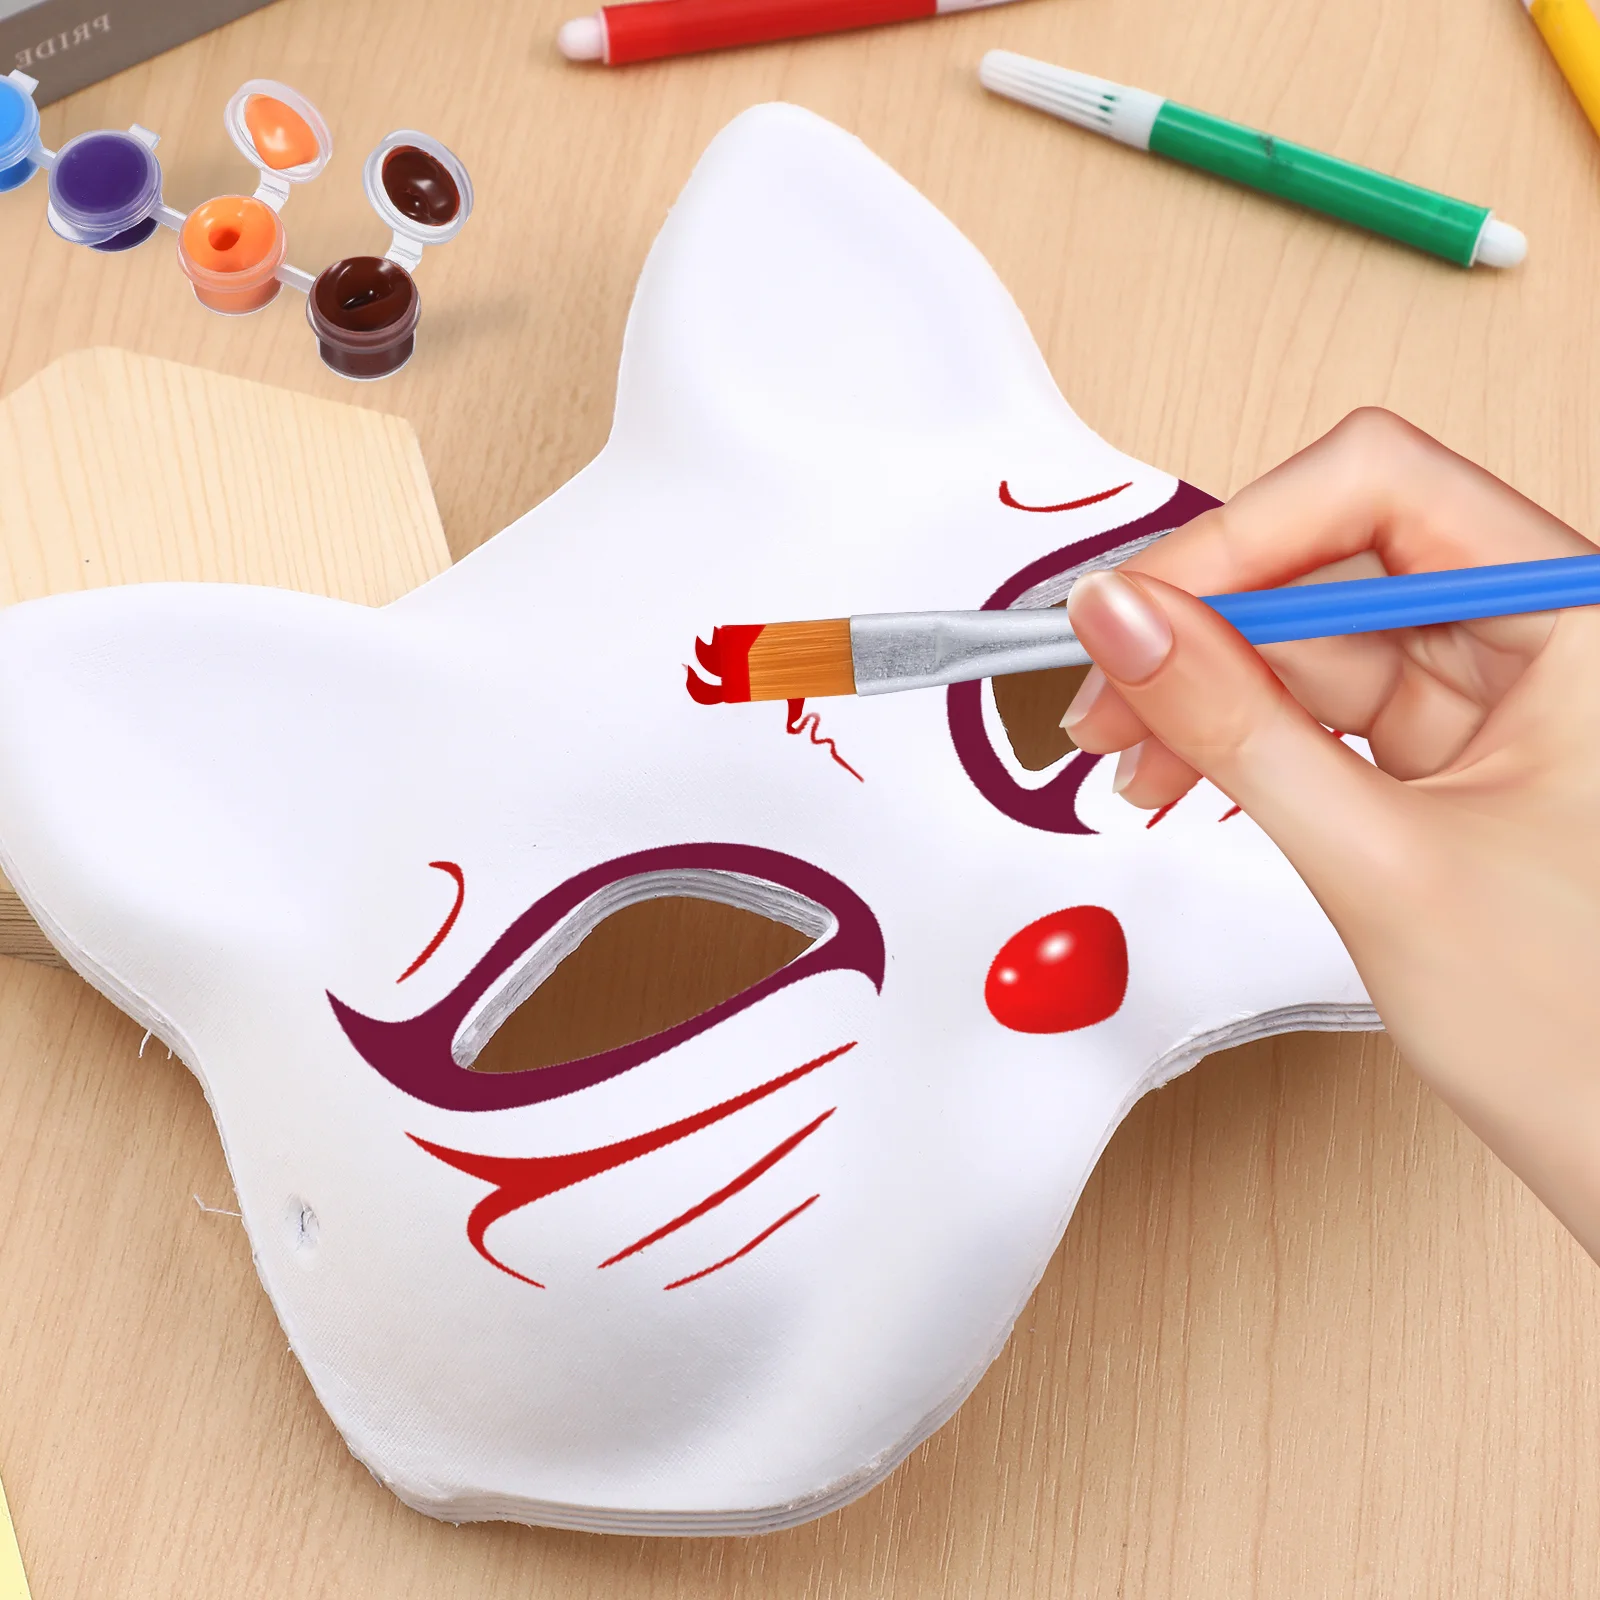 1 Conjunto de Diy Fox Máscaras Festa de Máscaras de Papel em Branco, a Polpa de Máscaras de Cosplay de Artesanato Máscaras para Decorar com Tintas Imagem 3